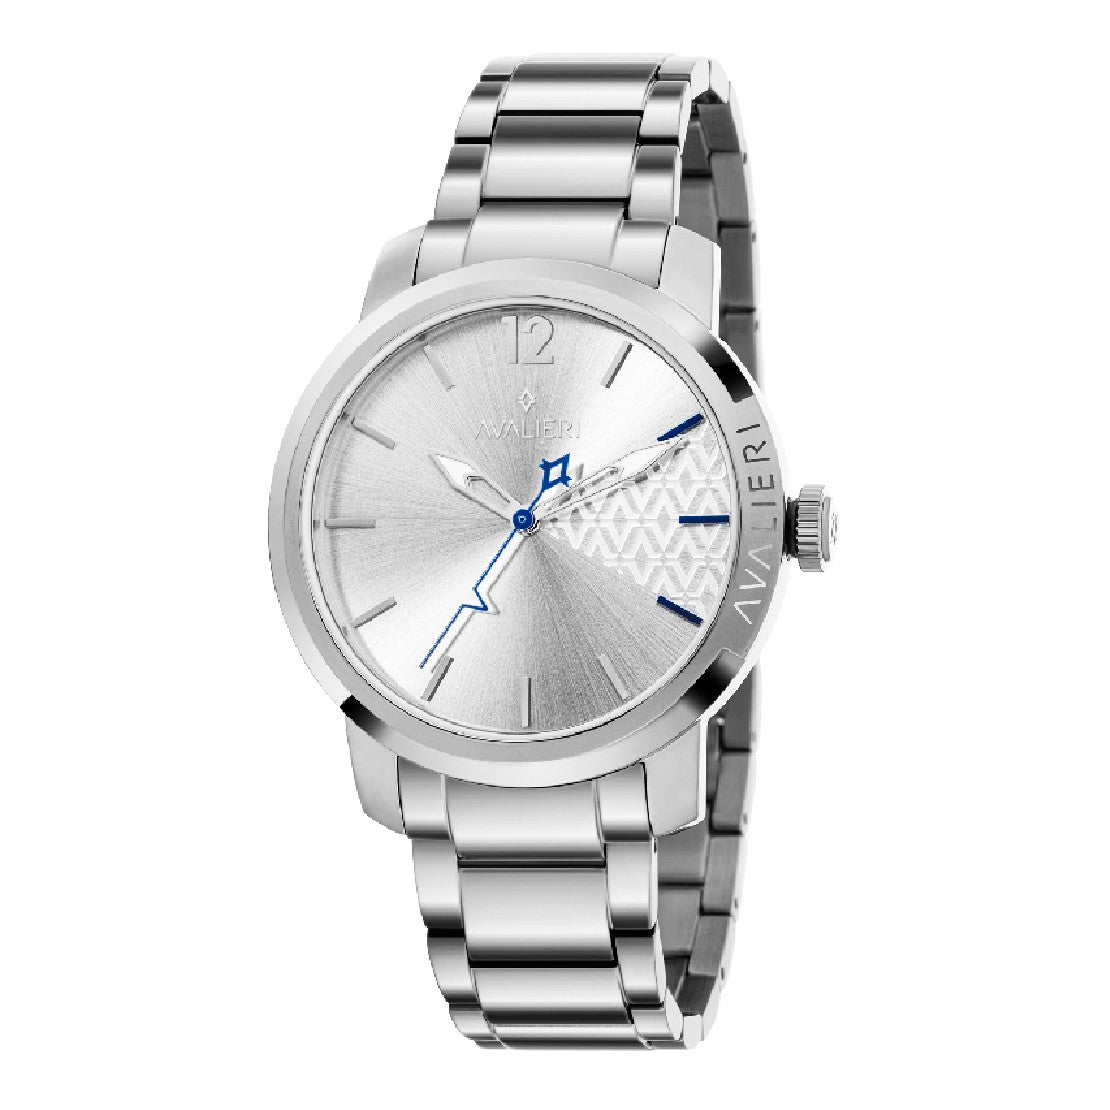 Avalieri Men's Quartz Watch Silver Dial - AV-2381B